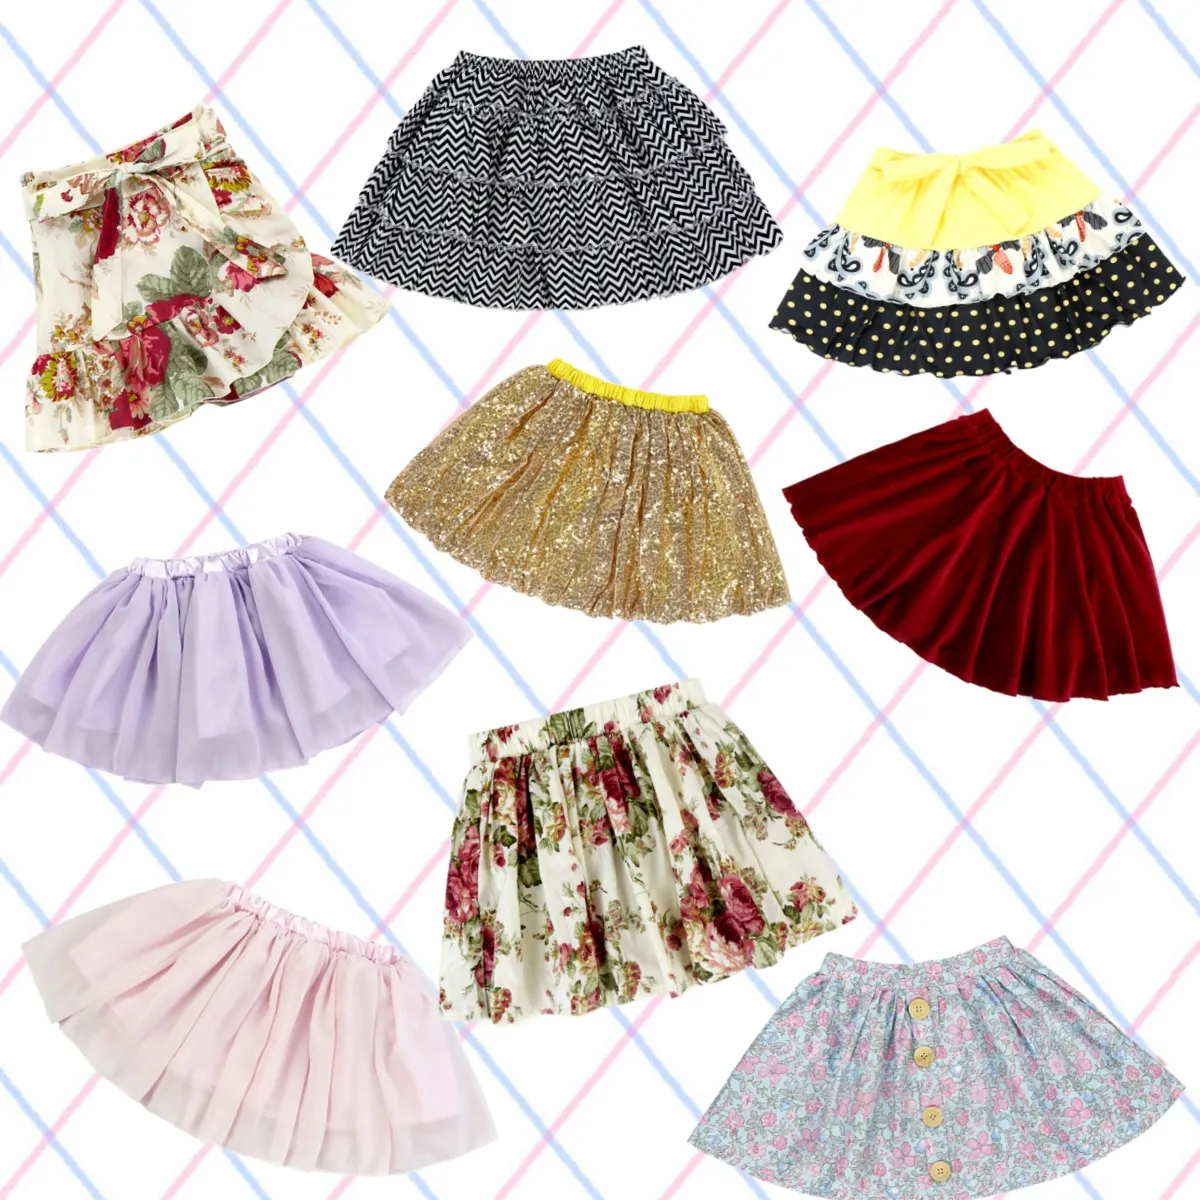 ييوو ييوان ملابس الصيف فستان رائج الشعبية تنورة فتاة صغيرة ل 1-6 تنورة قصيرة مثير دعم تصميم وحجم مخصص